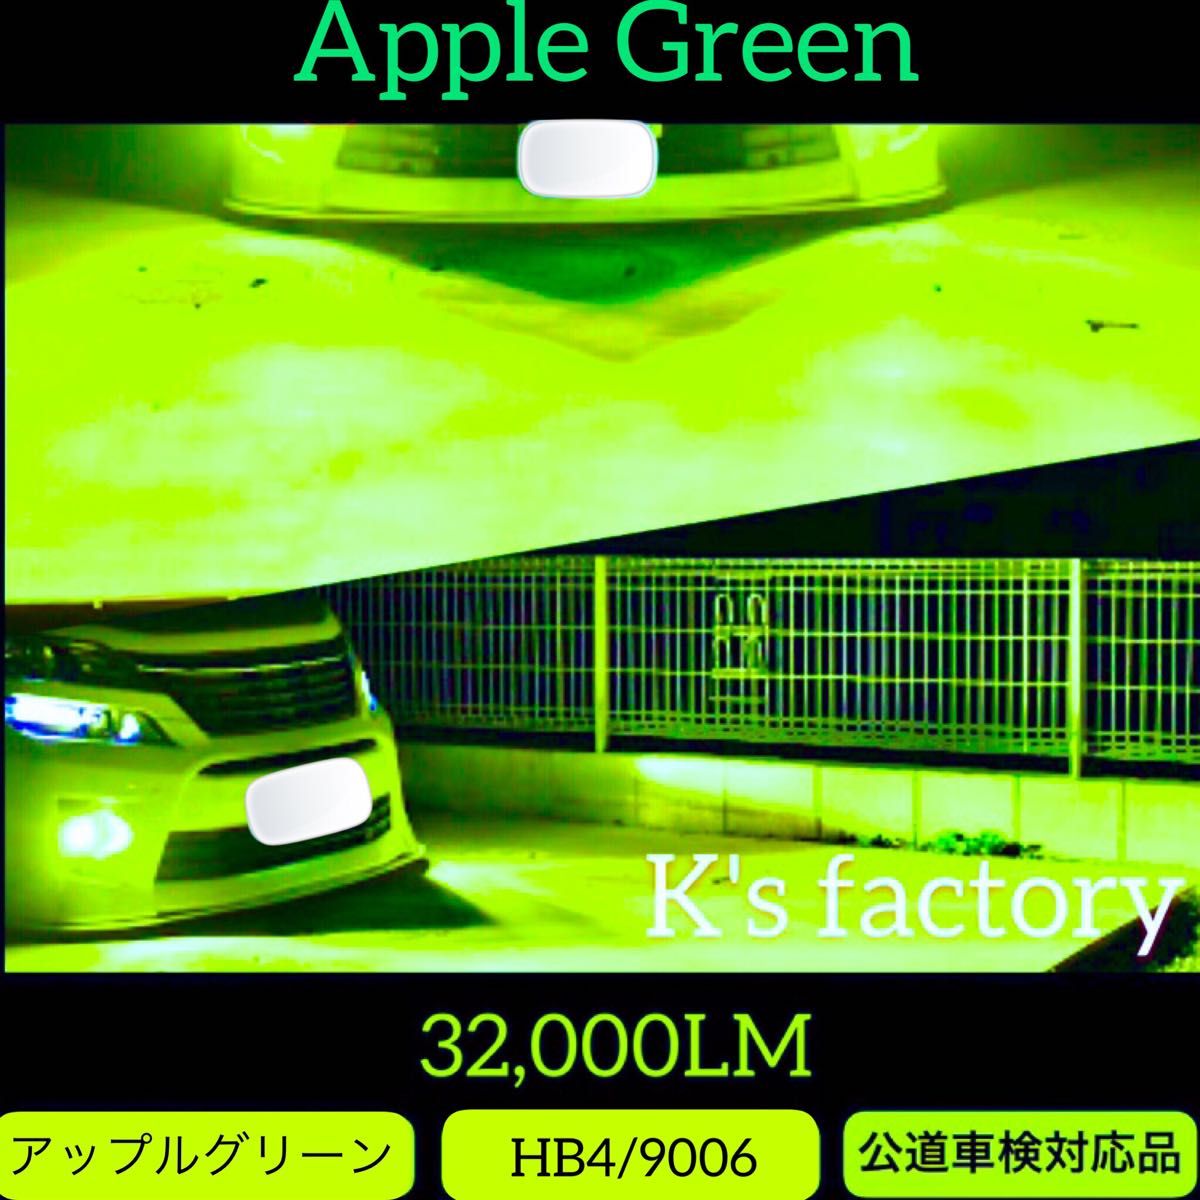 【国内発送】 HB4 9006 フォグランプ 緑色 アップルグリーン 32,000LM